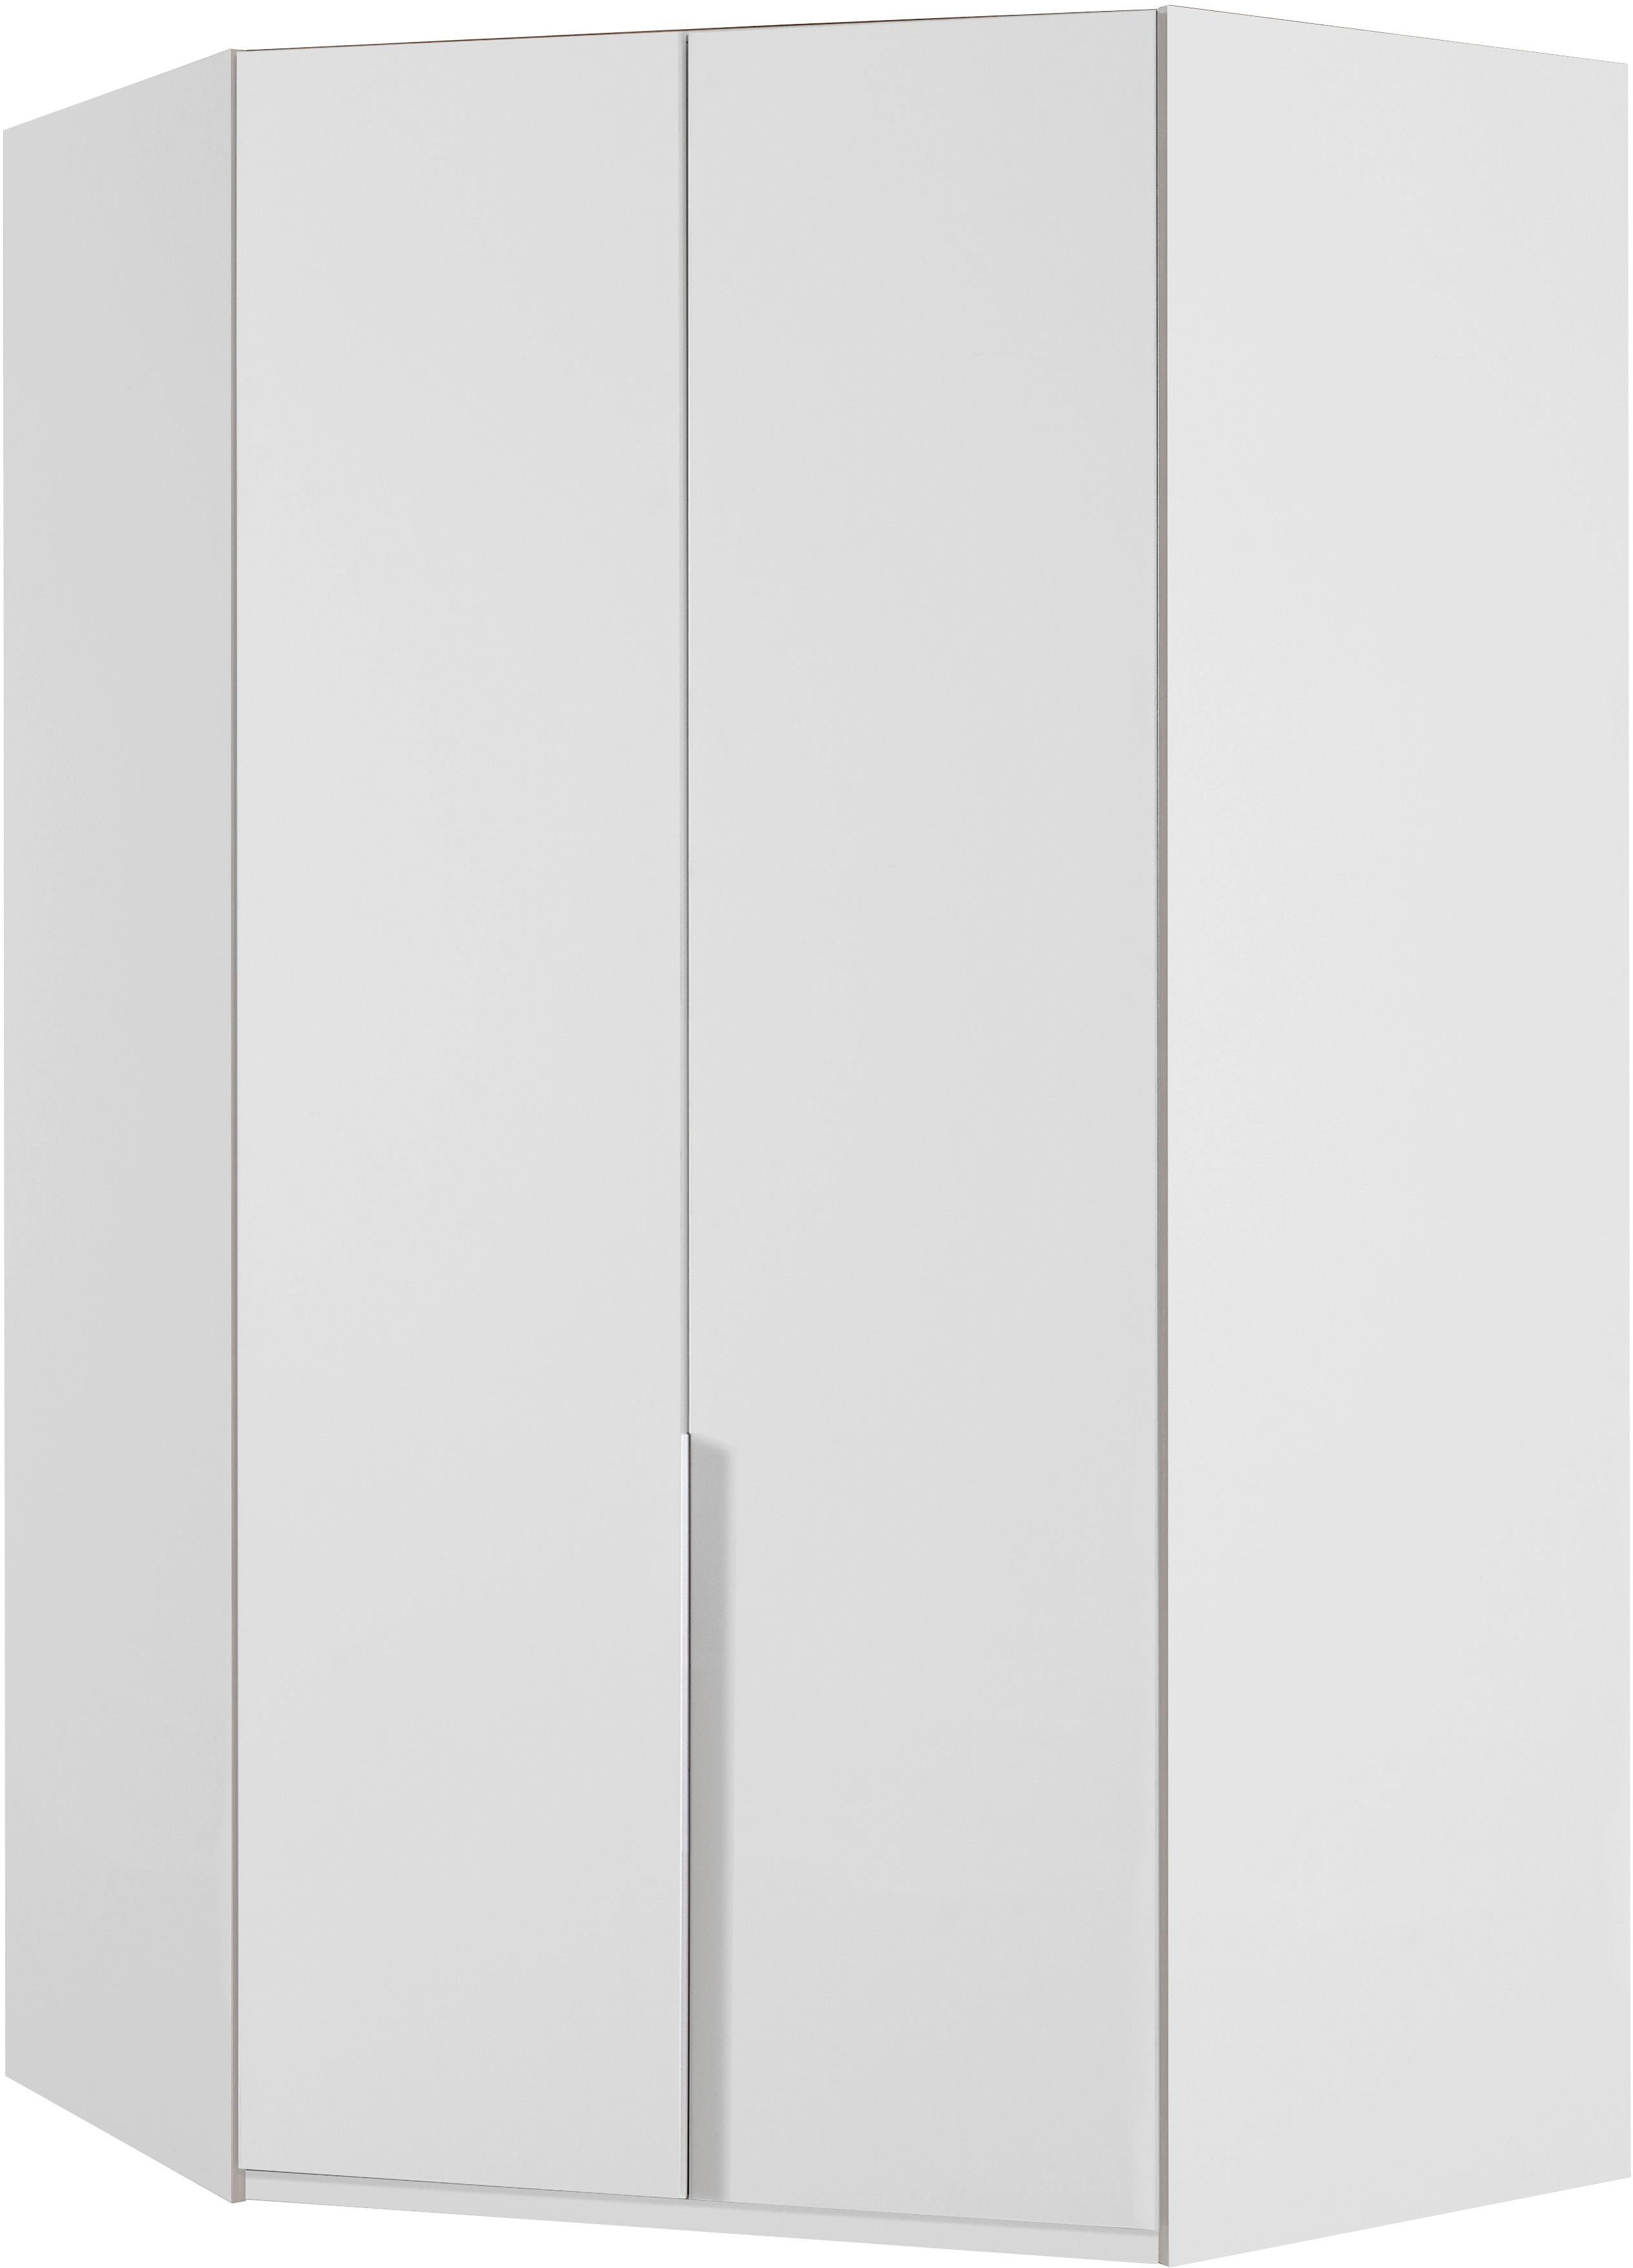 wimex hoekkledingkast new york 208 of 236 cm hoog wit